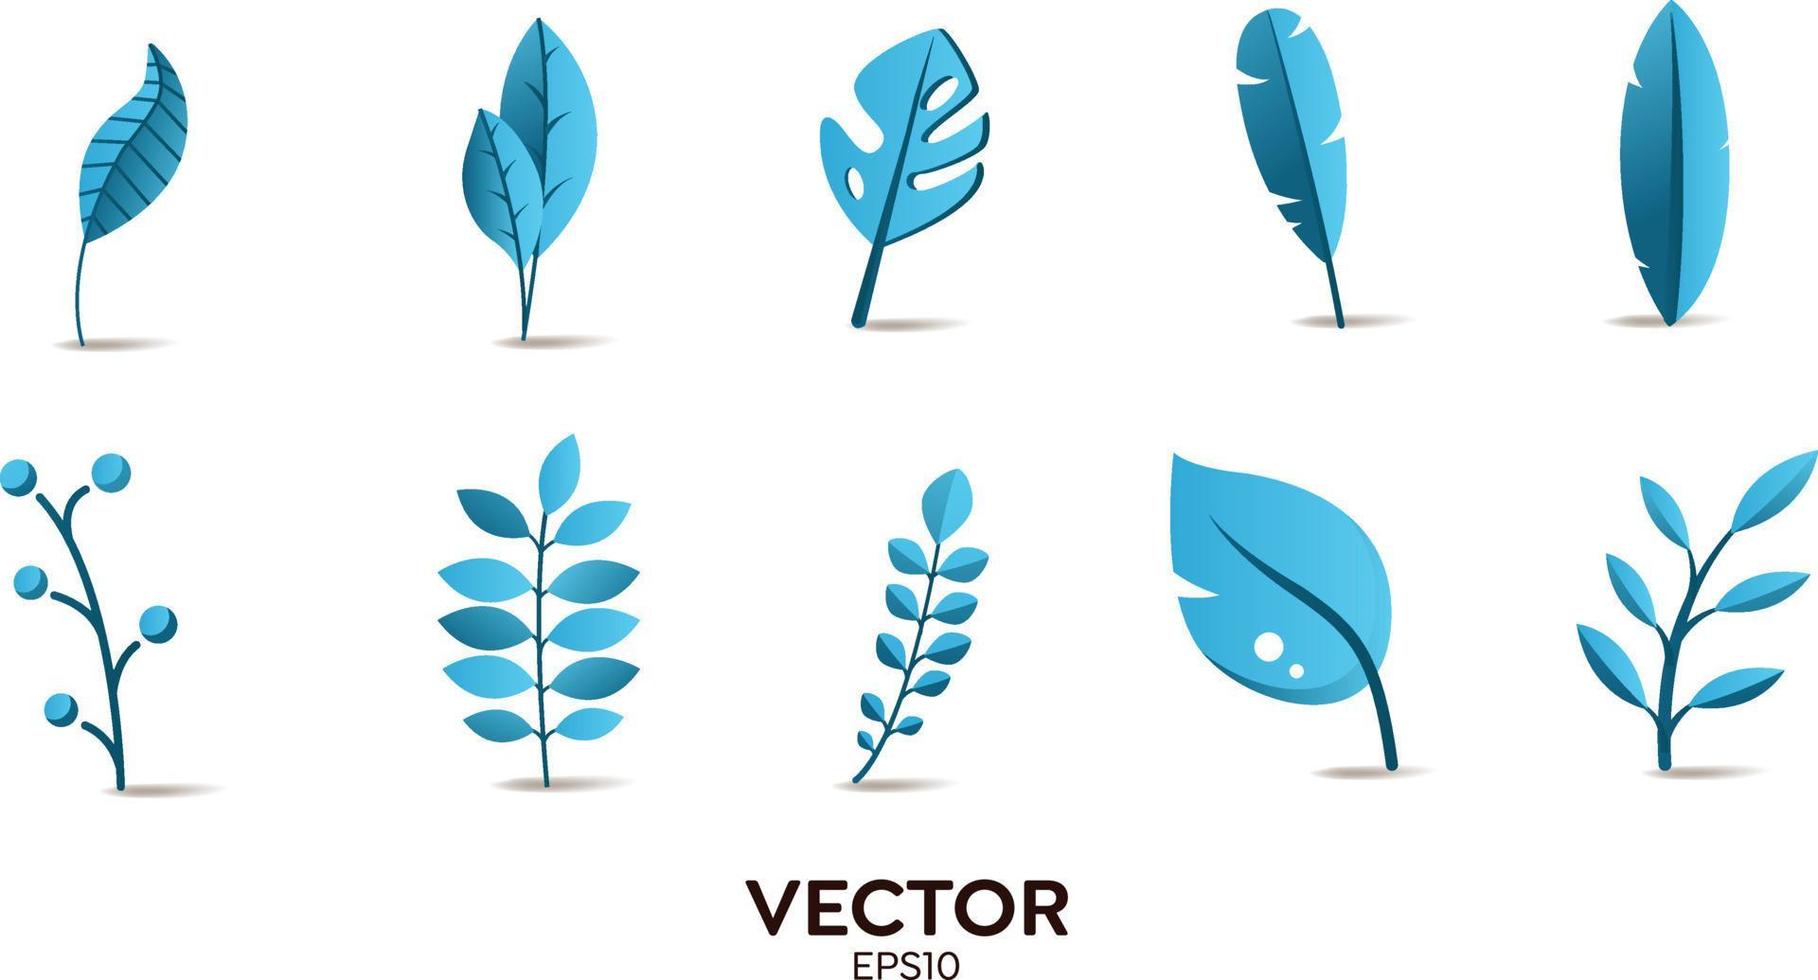 vectordesignerelementen instellen collectie van blauwe jungle varens, tropische eucalyptus kunst natuurlijke blad kruiden bladeren in vector stijl. decoratieve schoonheid elegante illustratie voor ontwerp